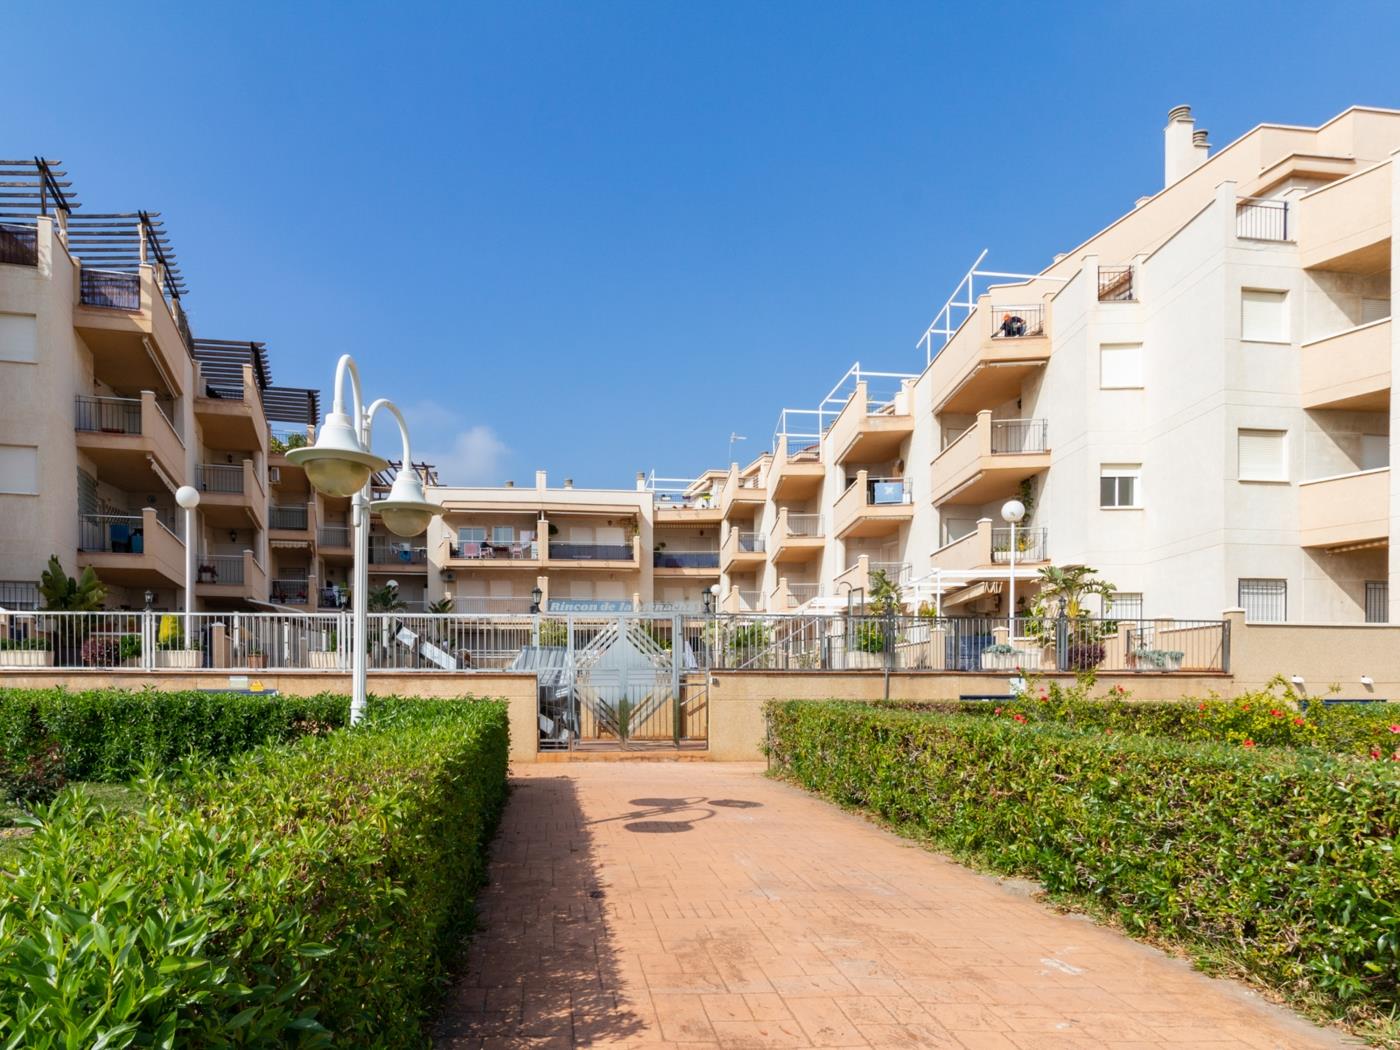 Apto Castell Beach. Apartment mit einer geräumigen Terrasse am Meer. in Castell de Ferro